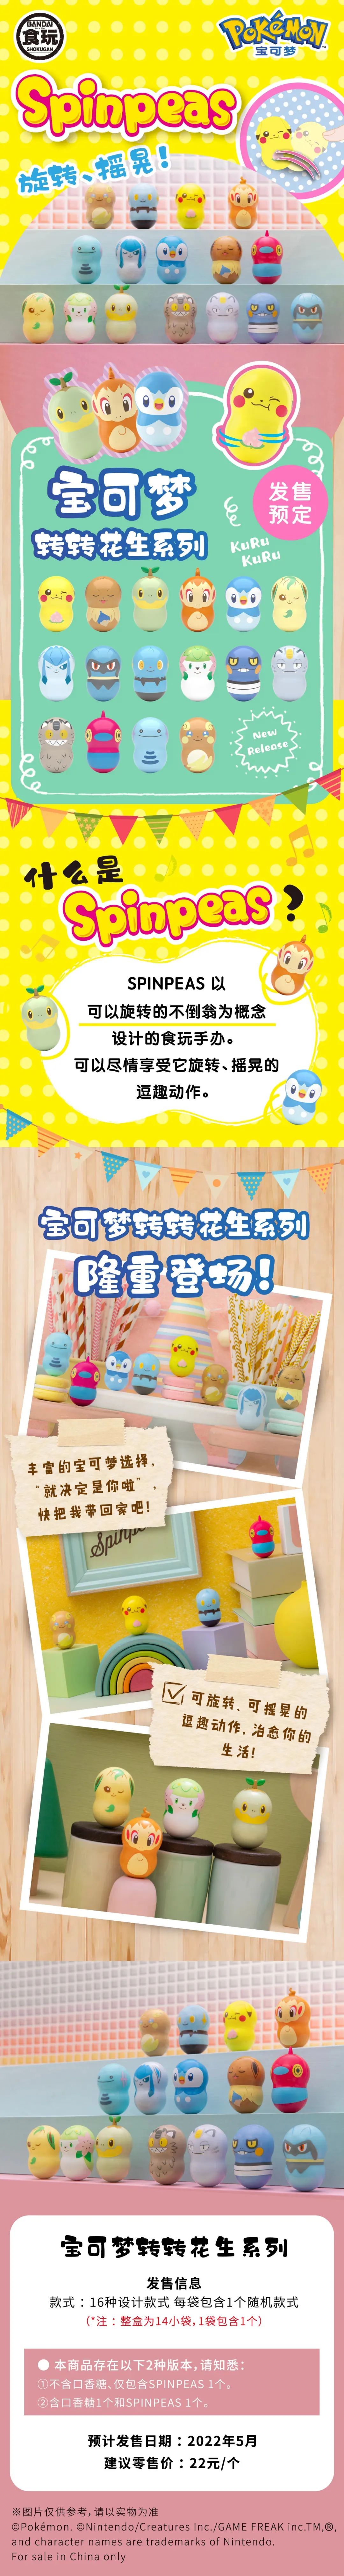 【生活】宝可梦主题夏令营在台湾举办